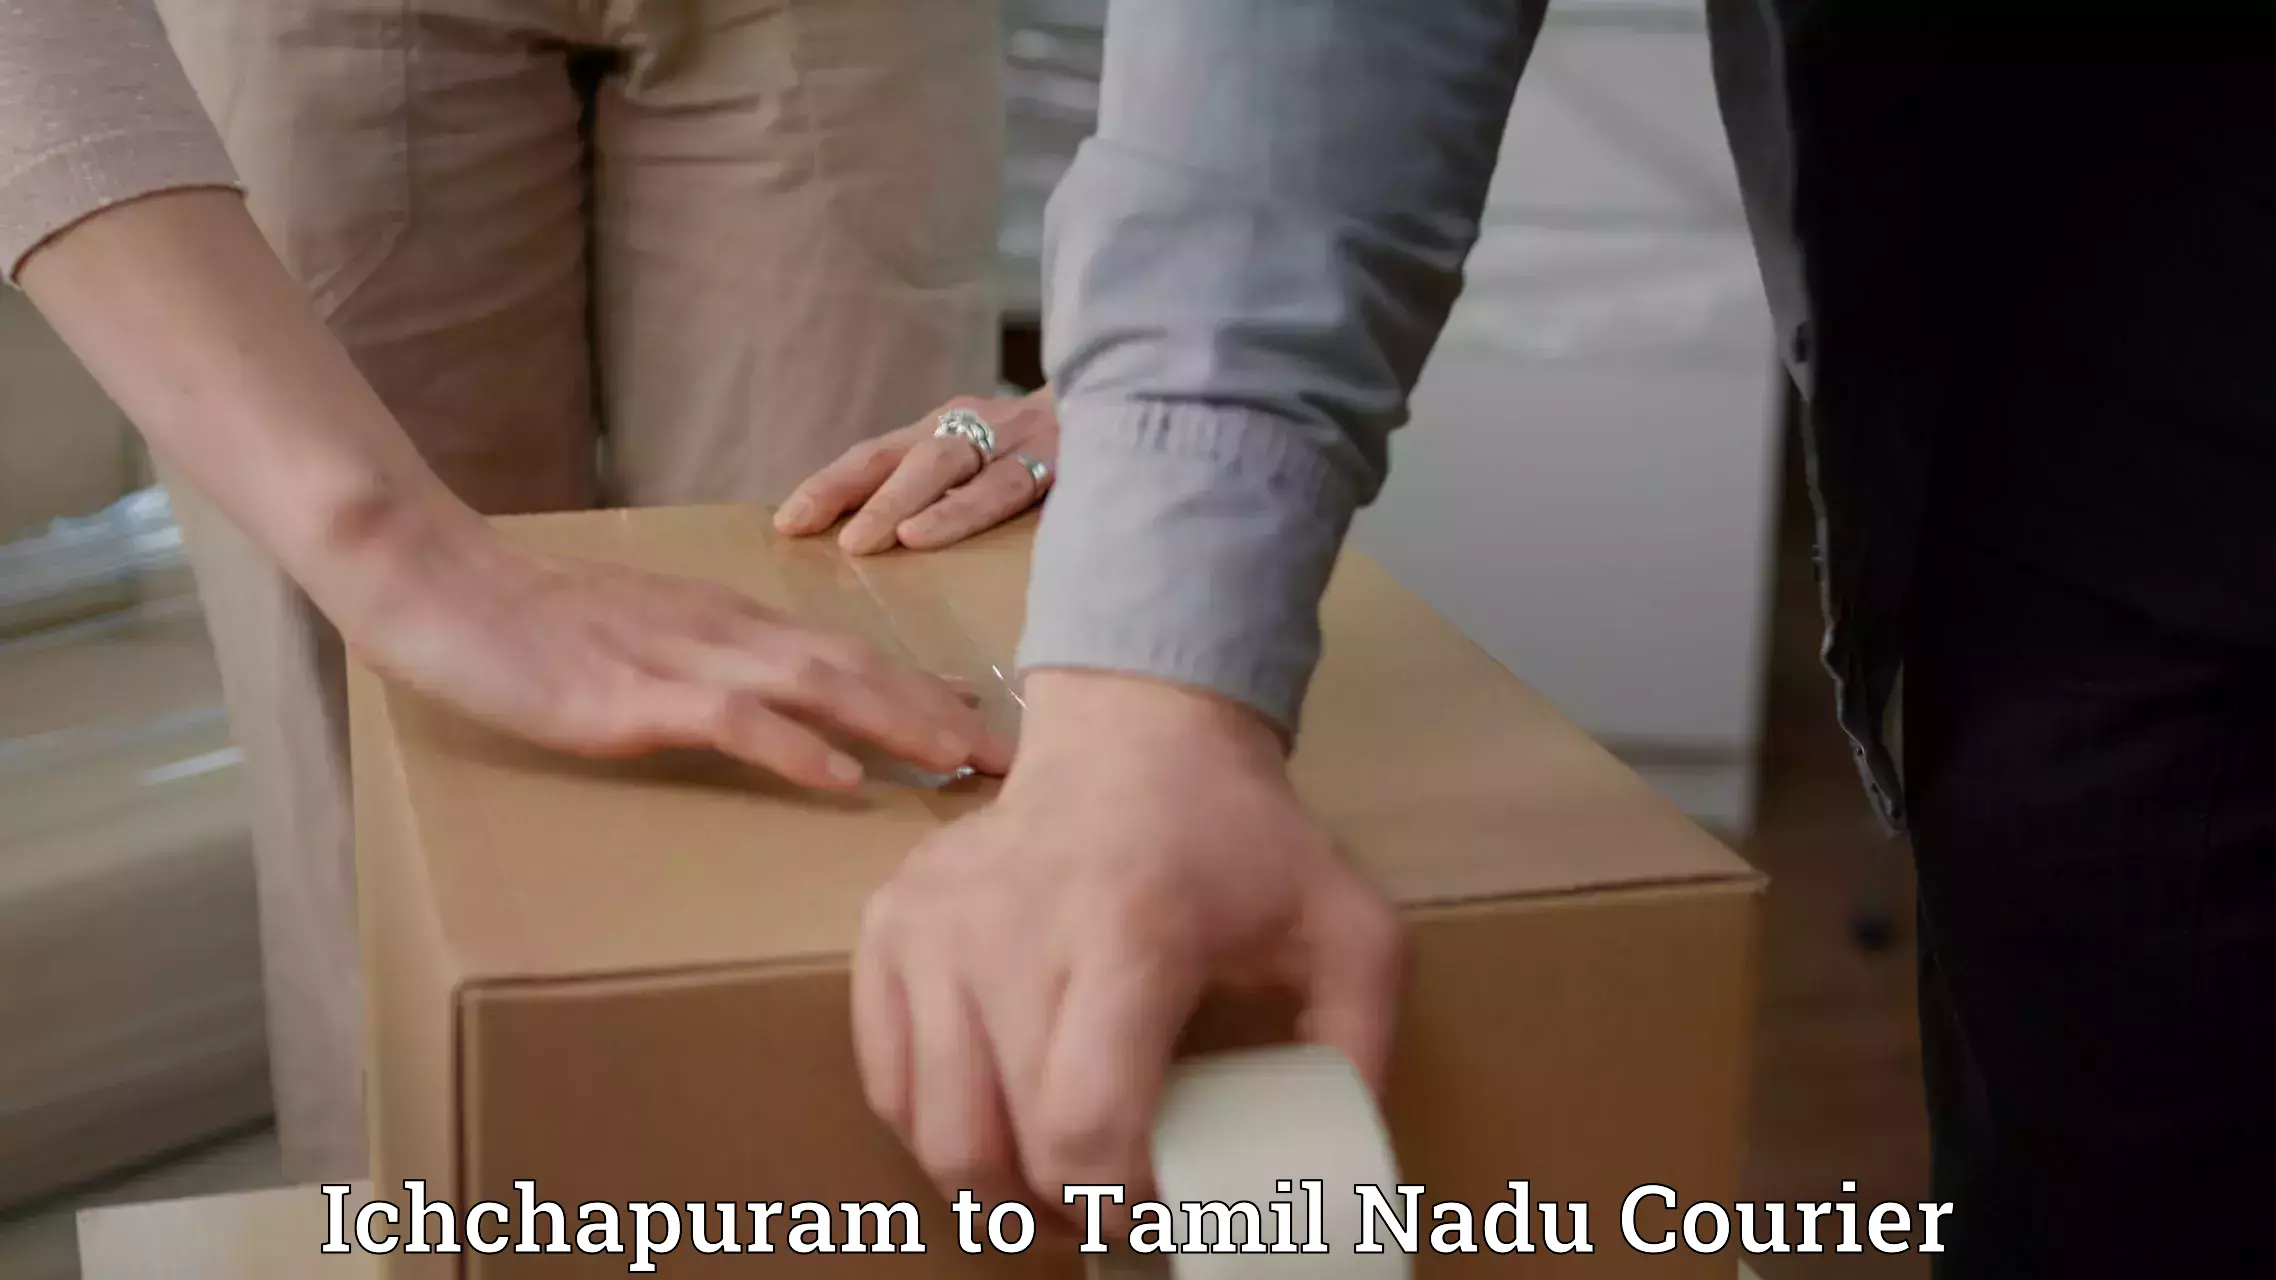 Next-generation courier services Ichchapuram to Viluppuram